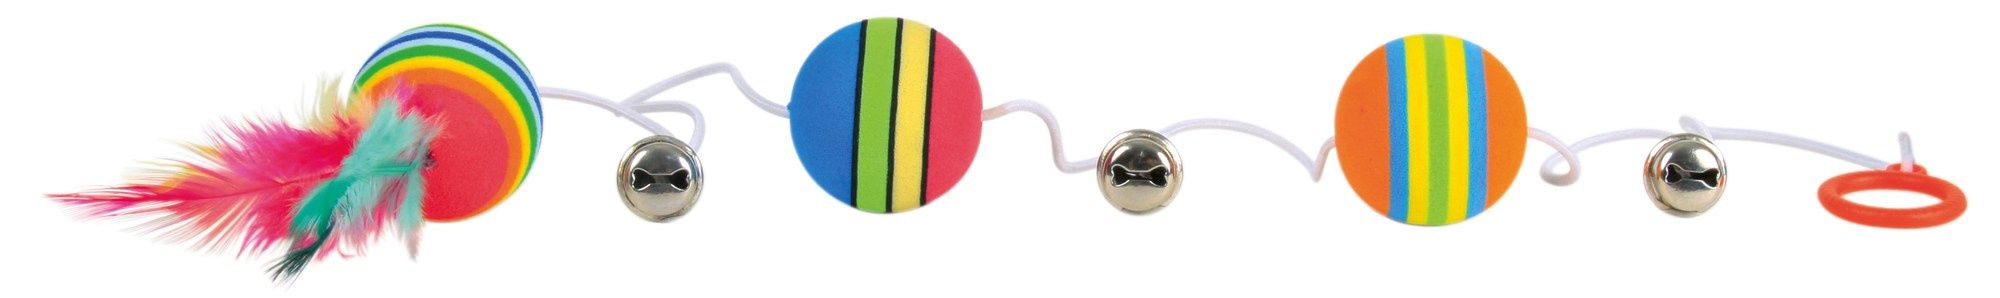 Jucarie 3 mingi Rainbow cu Clopotel Pe Sfoara 3.5 cm 4133 3.5 imagine 2022